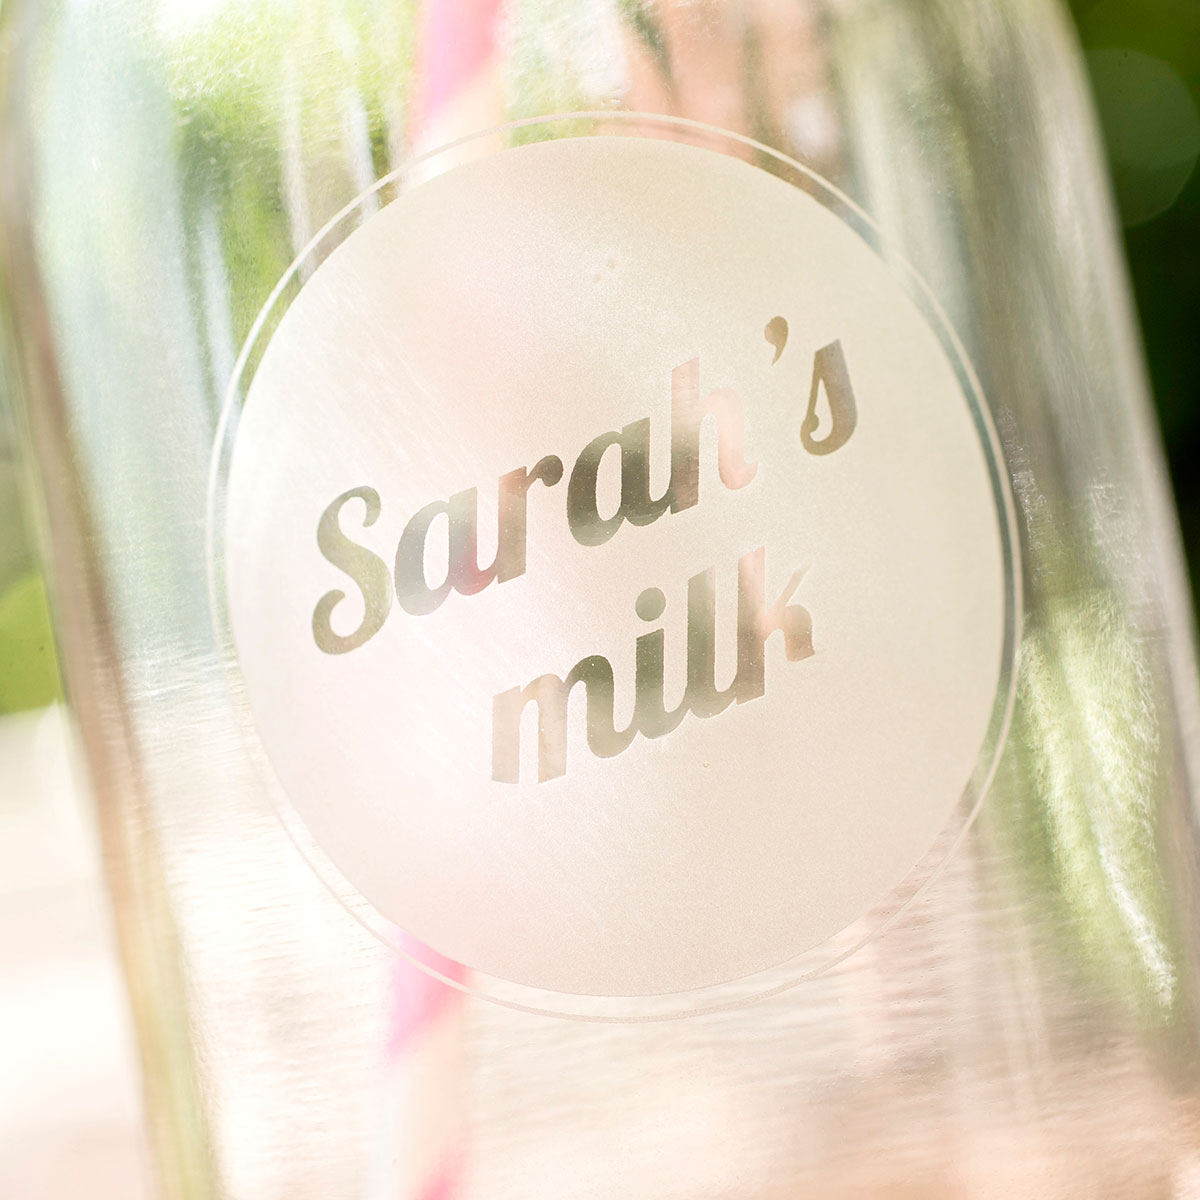 Personalised Milk Bottle